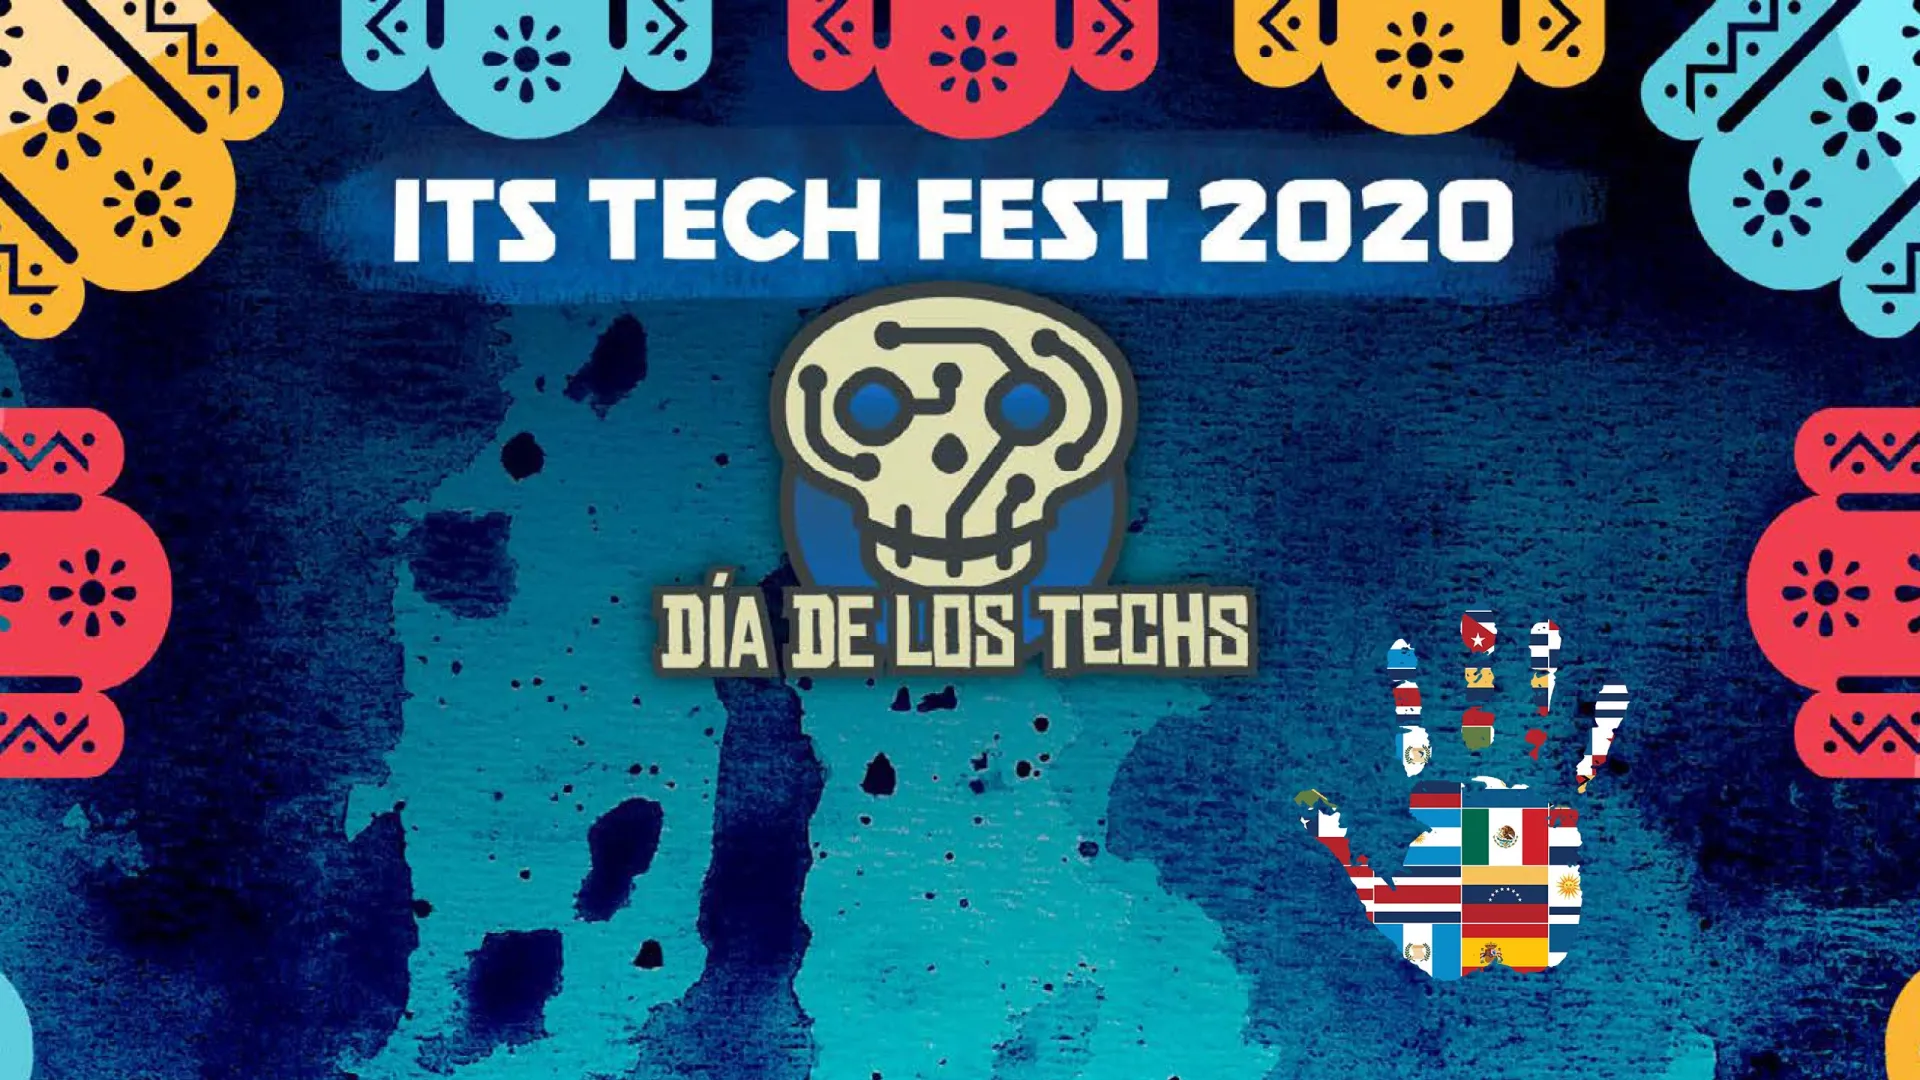 Dia de los Tech is the theme of the 2020 ITS Tech Fest.